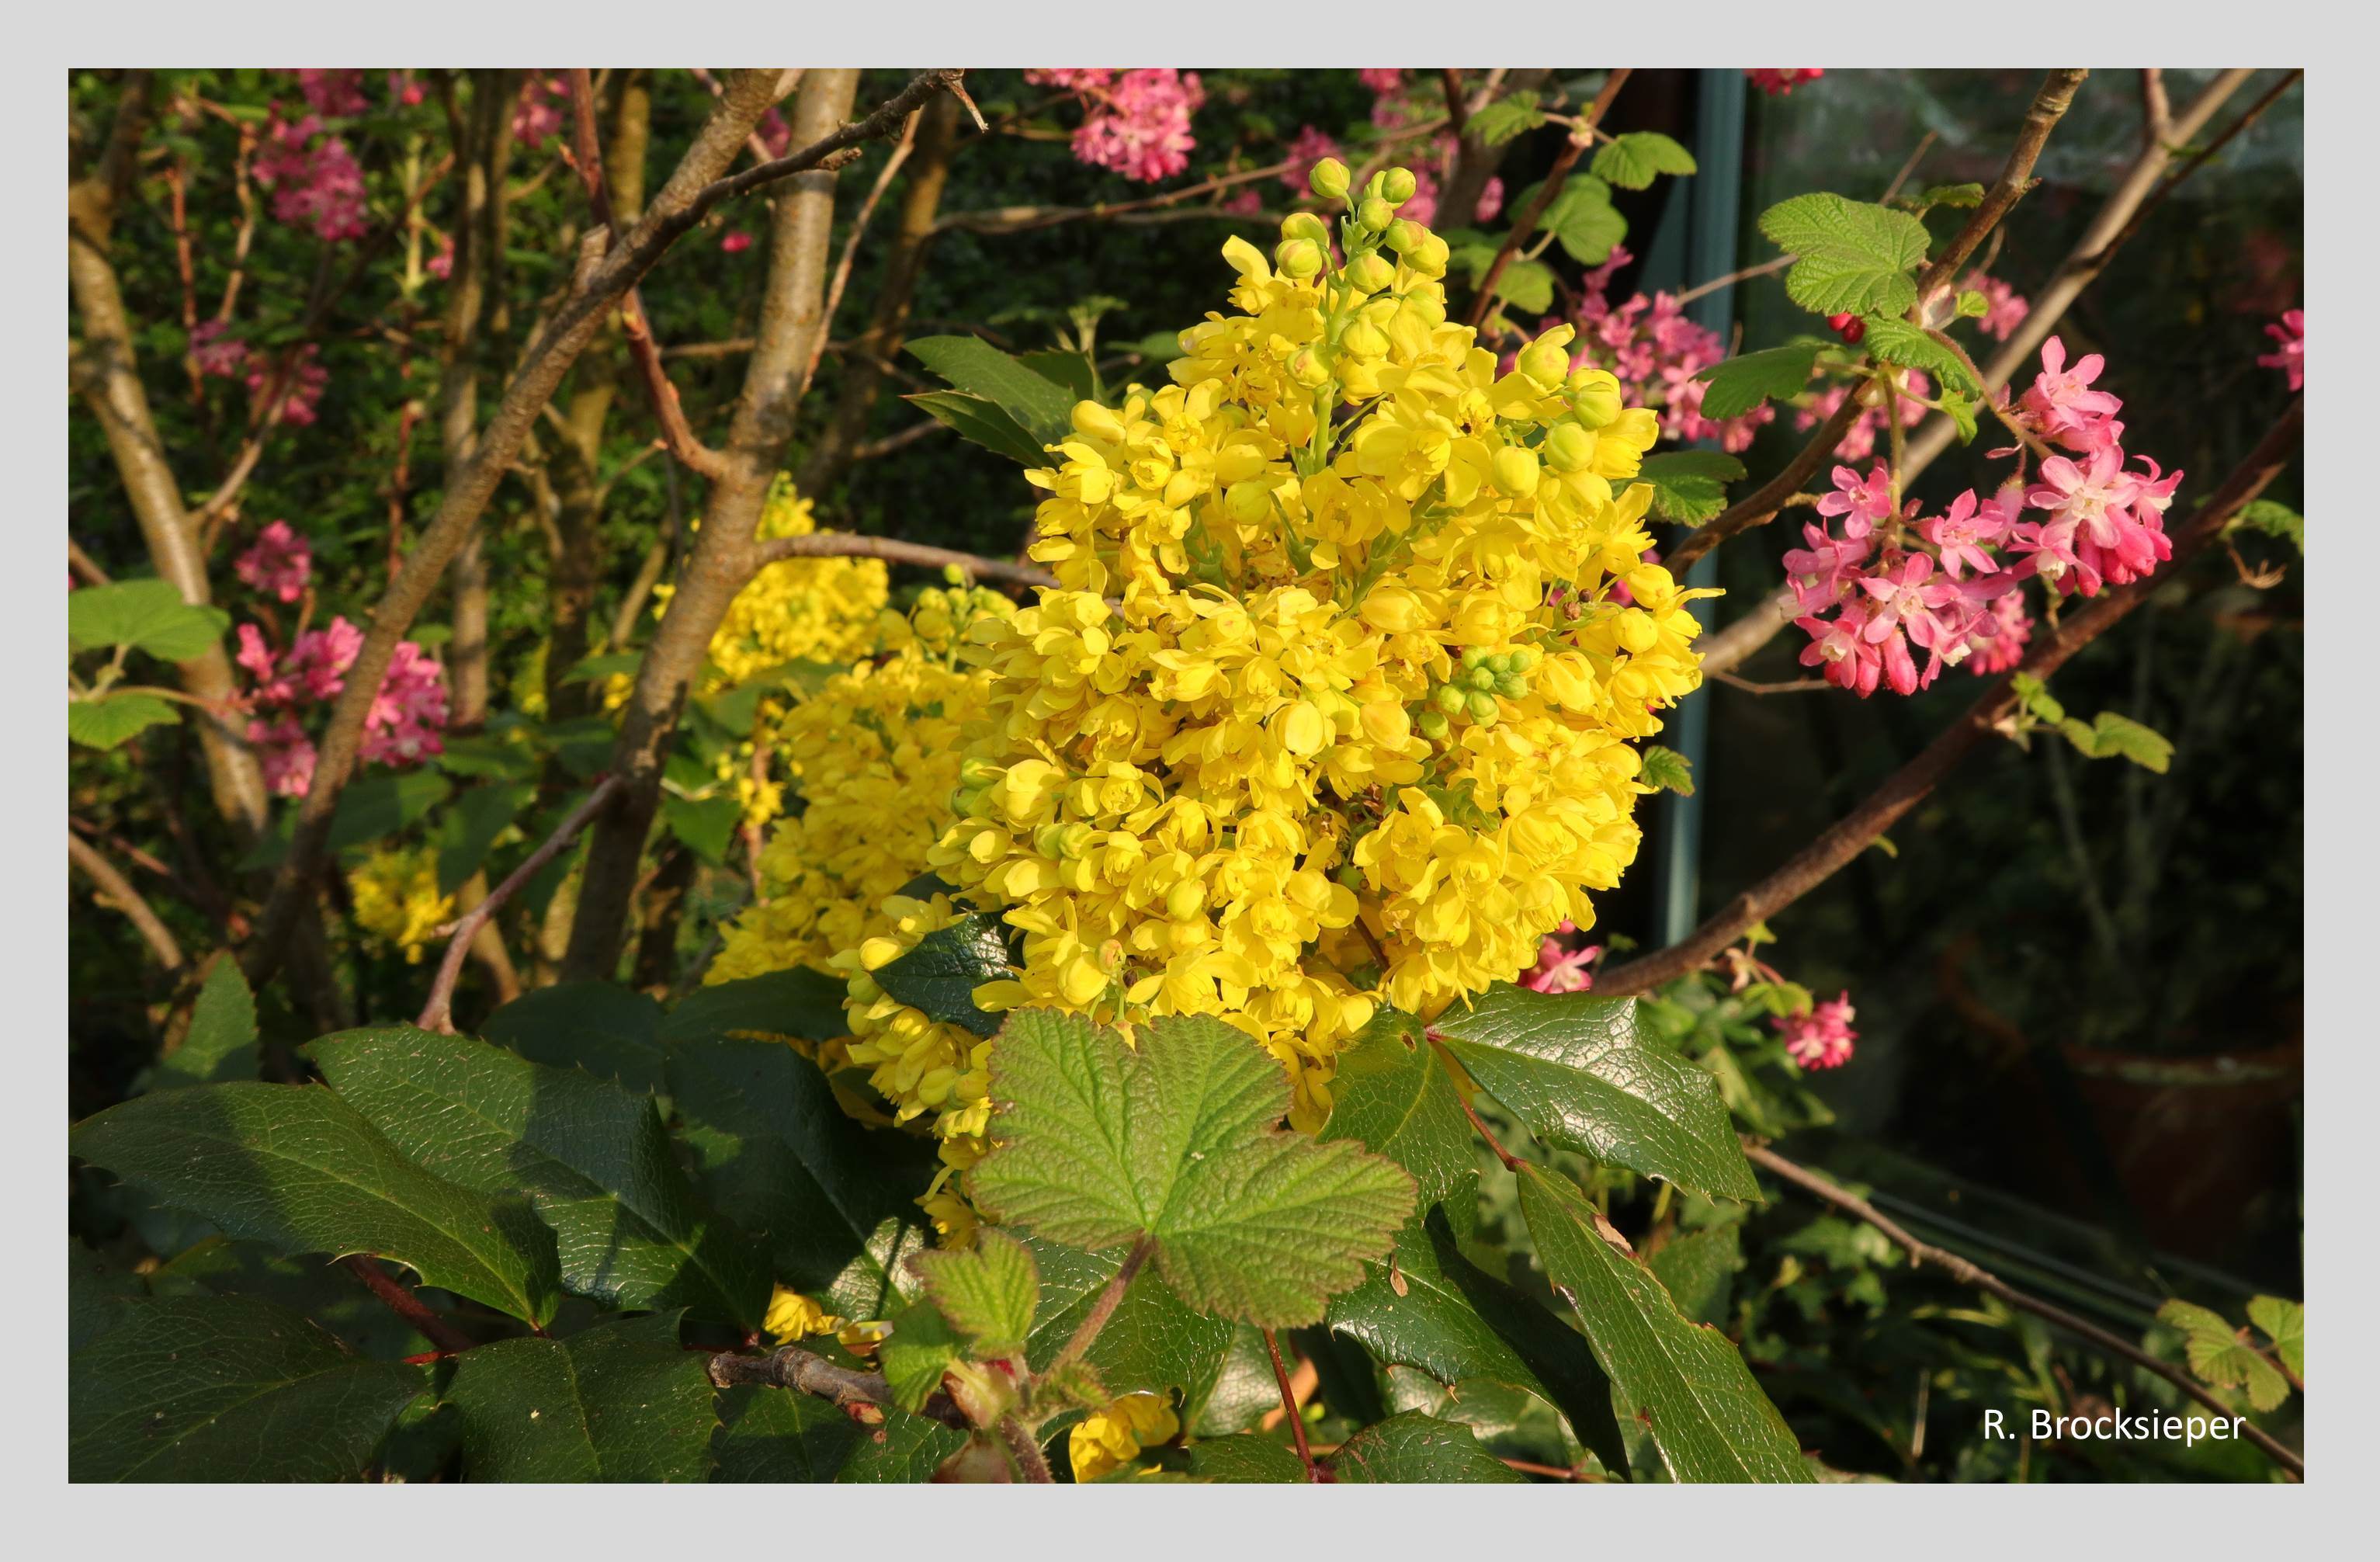 Die Mahonie (Mahonia aquifolium) ist ein anspruchsloser, immergrüner Strauch, der uns schon früh im Jahr mit seinen leuchtend gelben Blütenständen erfreut. Wild- und Honigbienen sowie Hummeln sammeln daran reichlich Nektar und Pollen. 